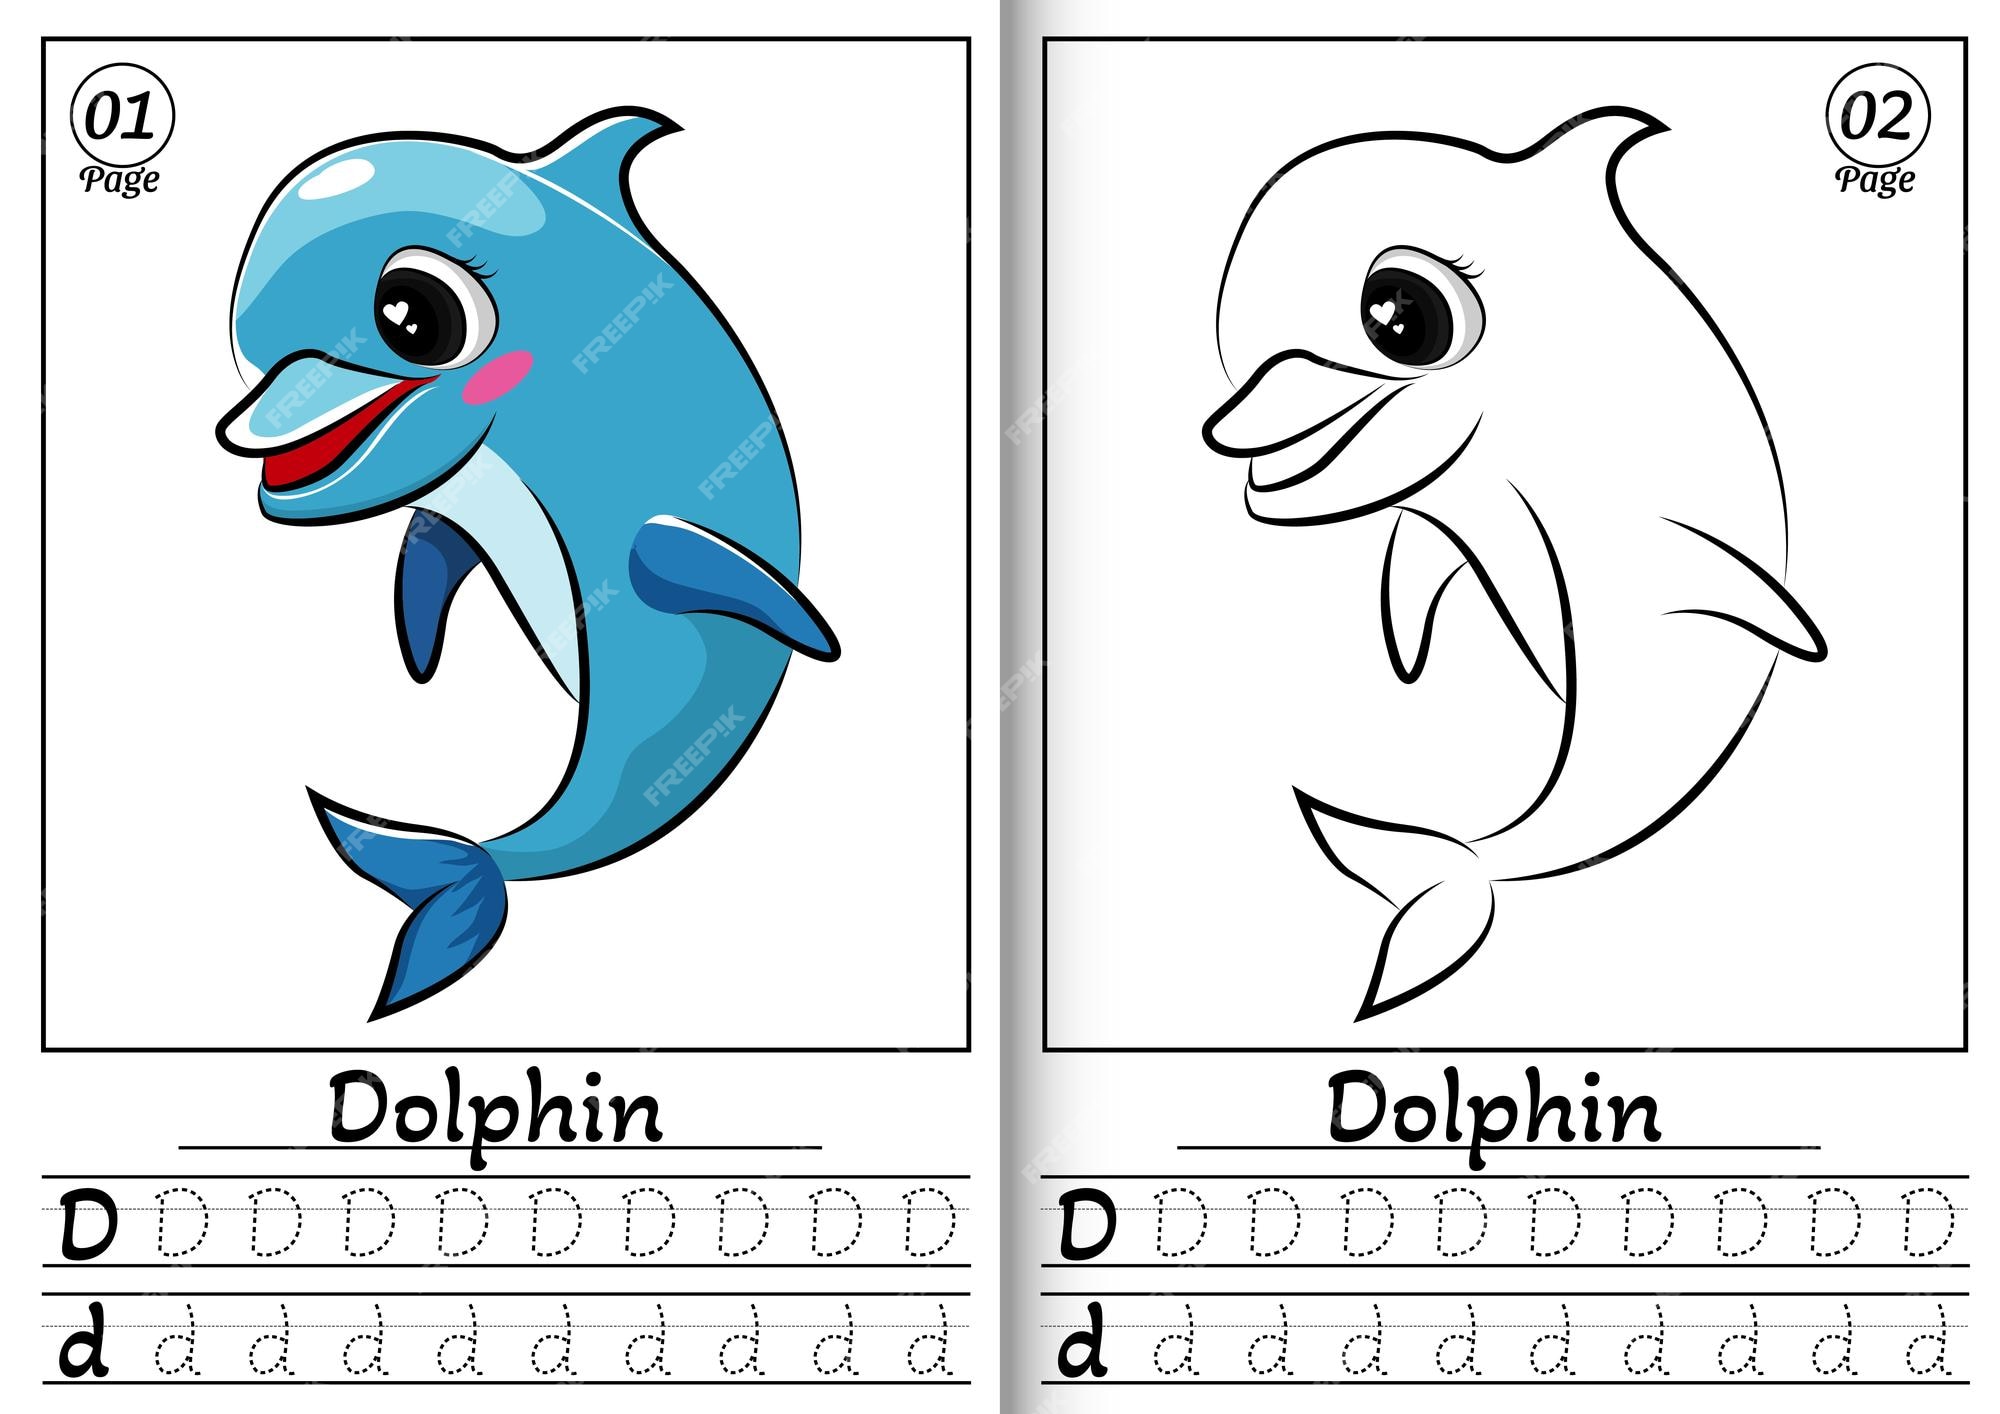 Dolphin alphabet abc coloring page d trazar letras del alfabeto inglãs actividad precolar para niãos vector premium